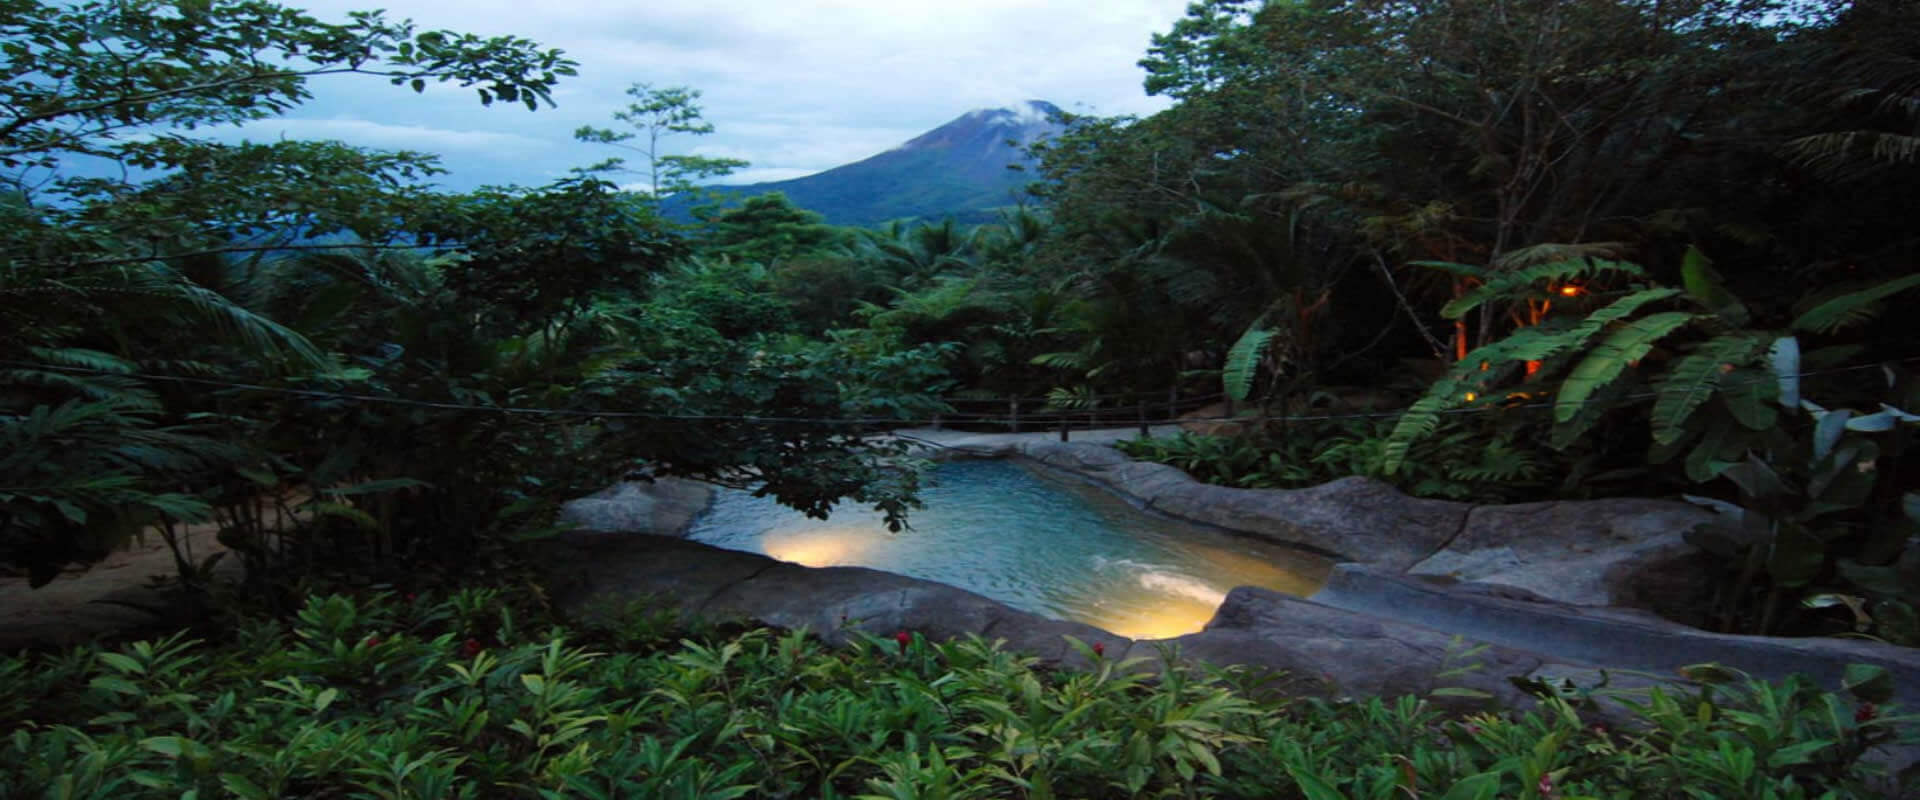 The Springs, La Fortuna, Costa Rica